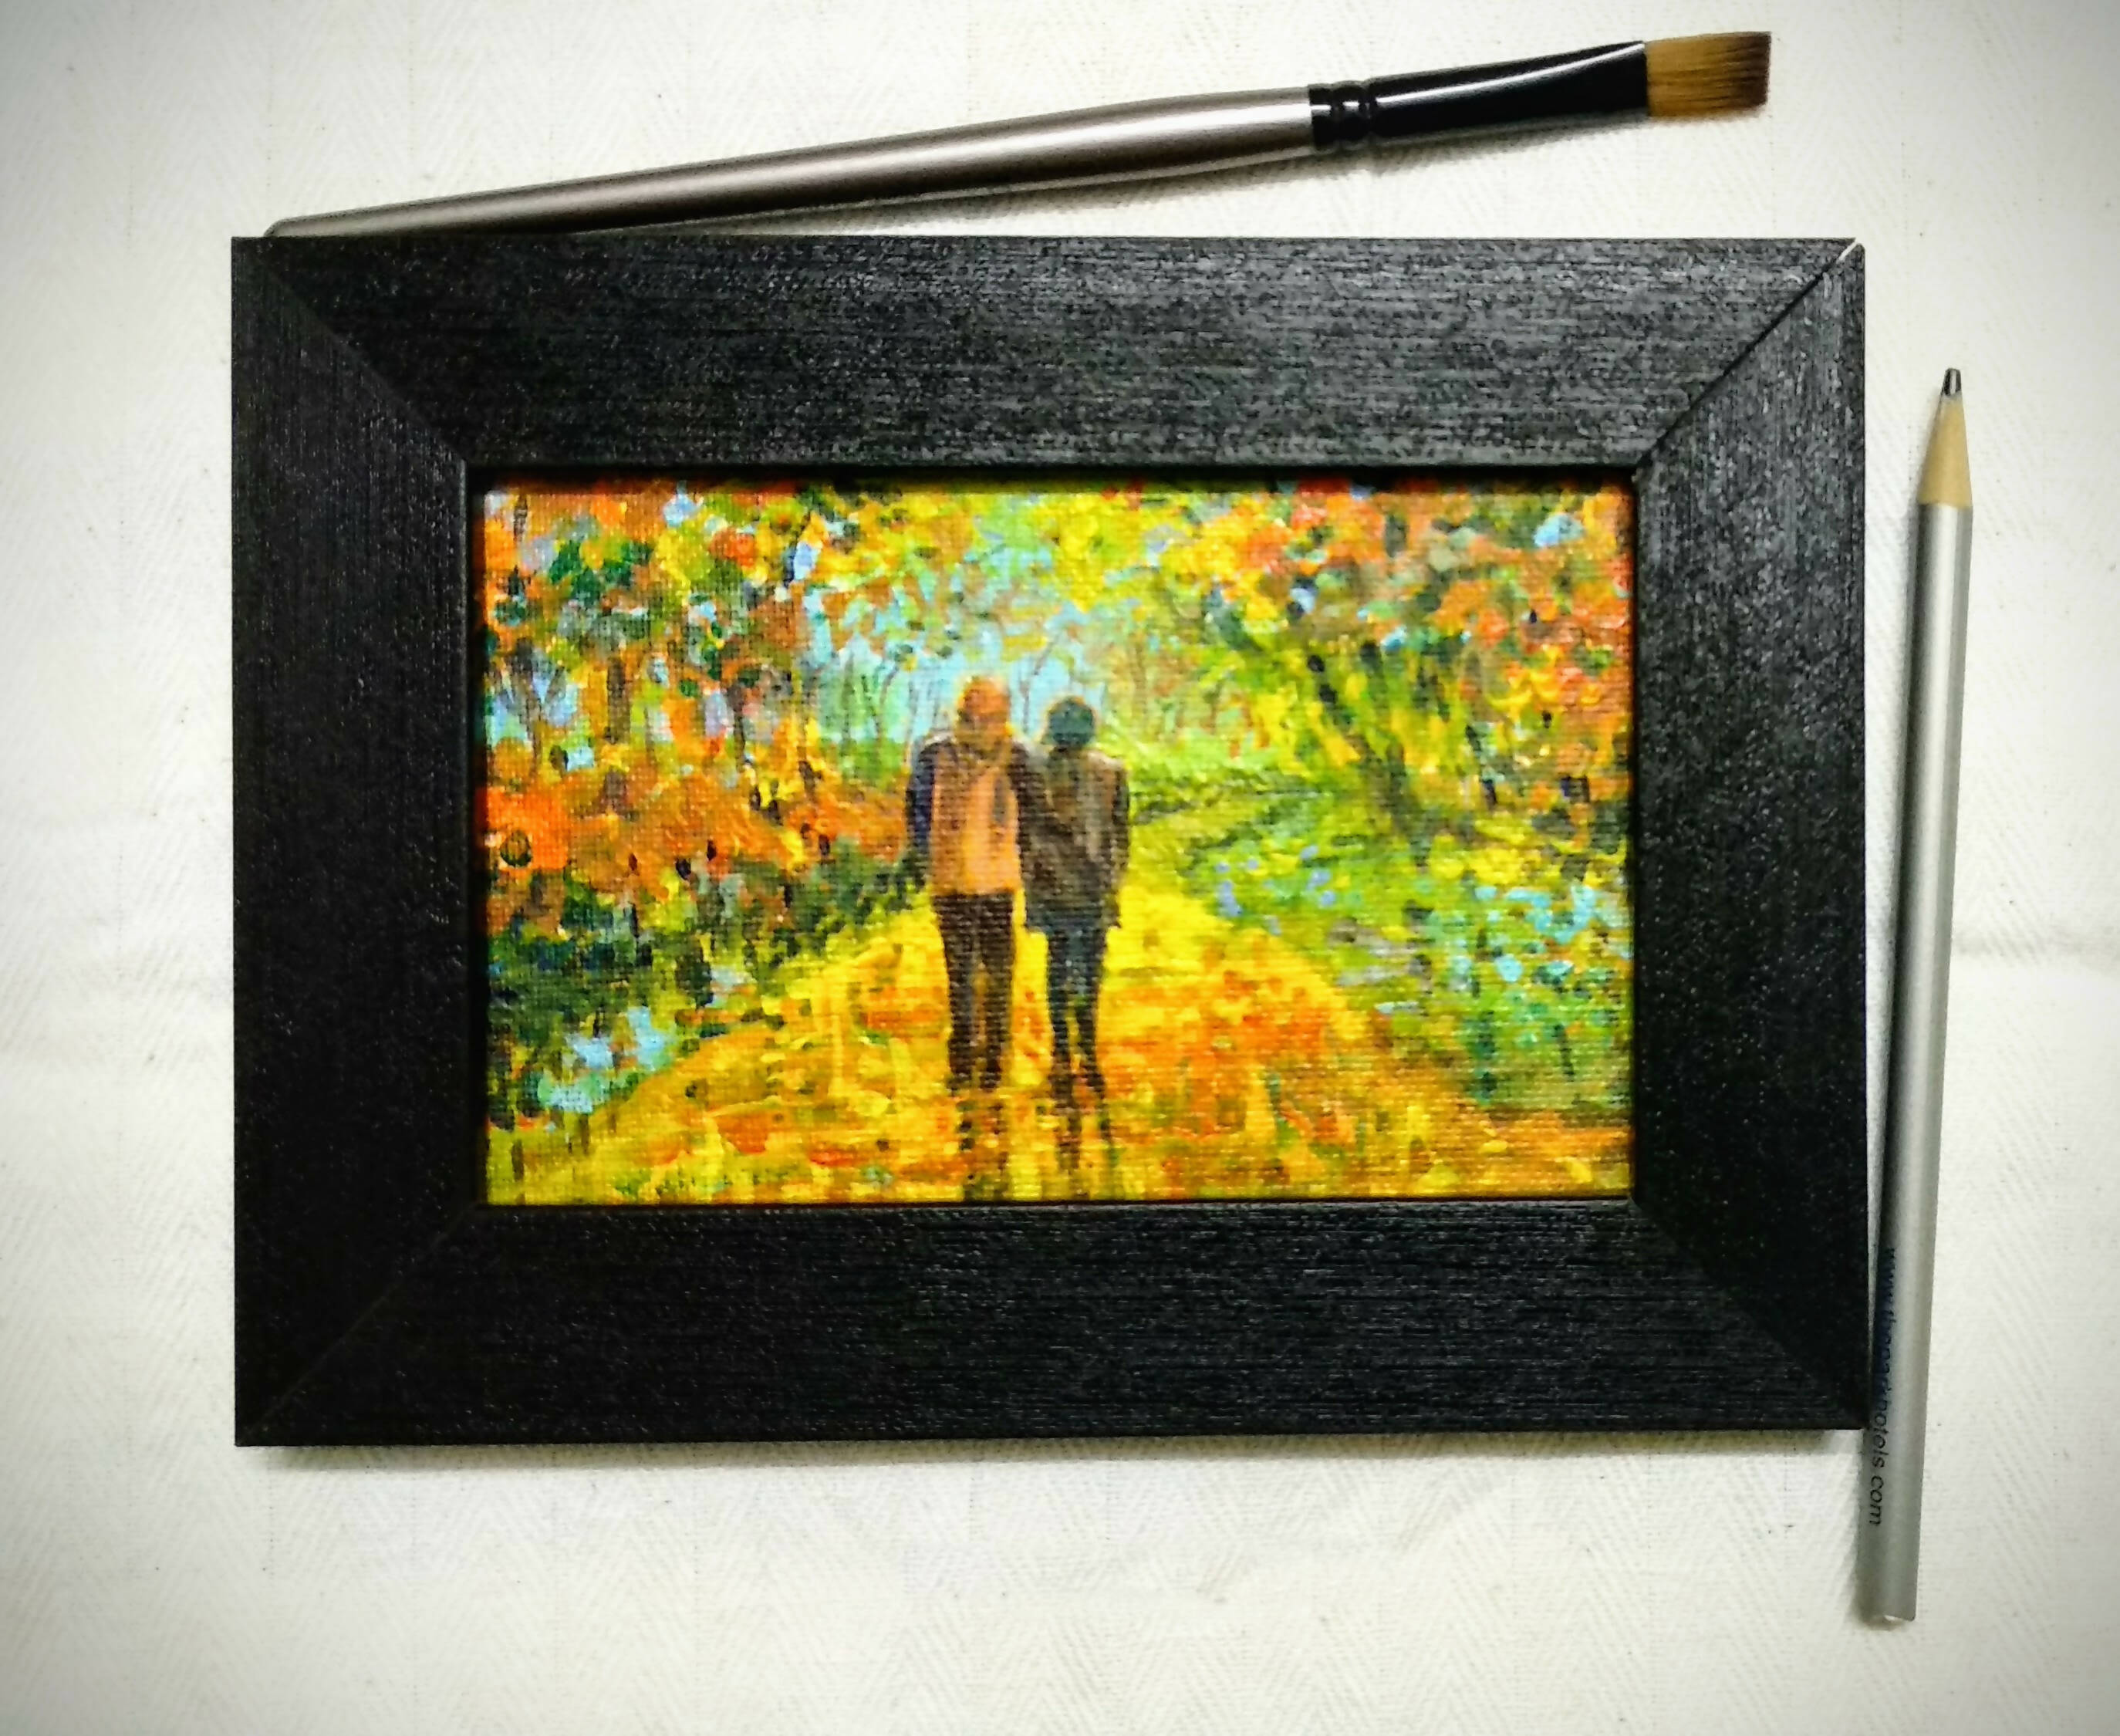 Romantic couple in autumn garden painting